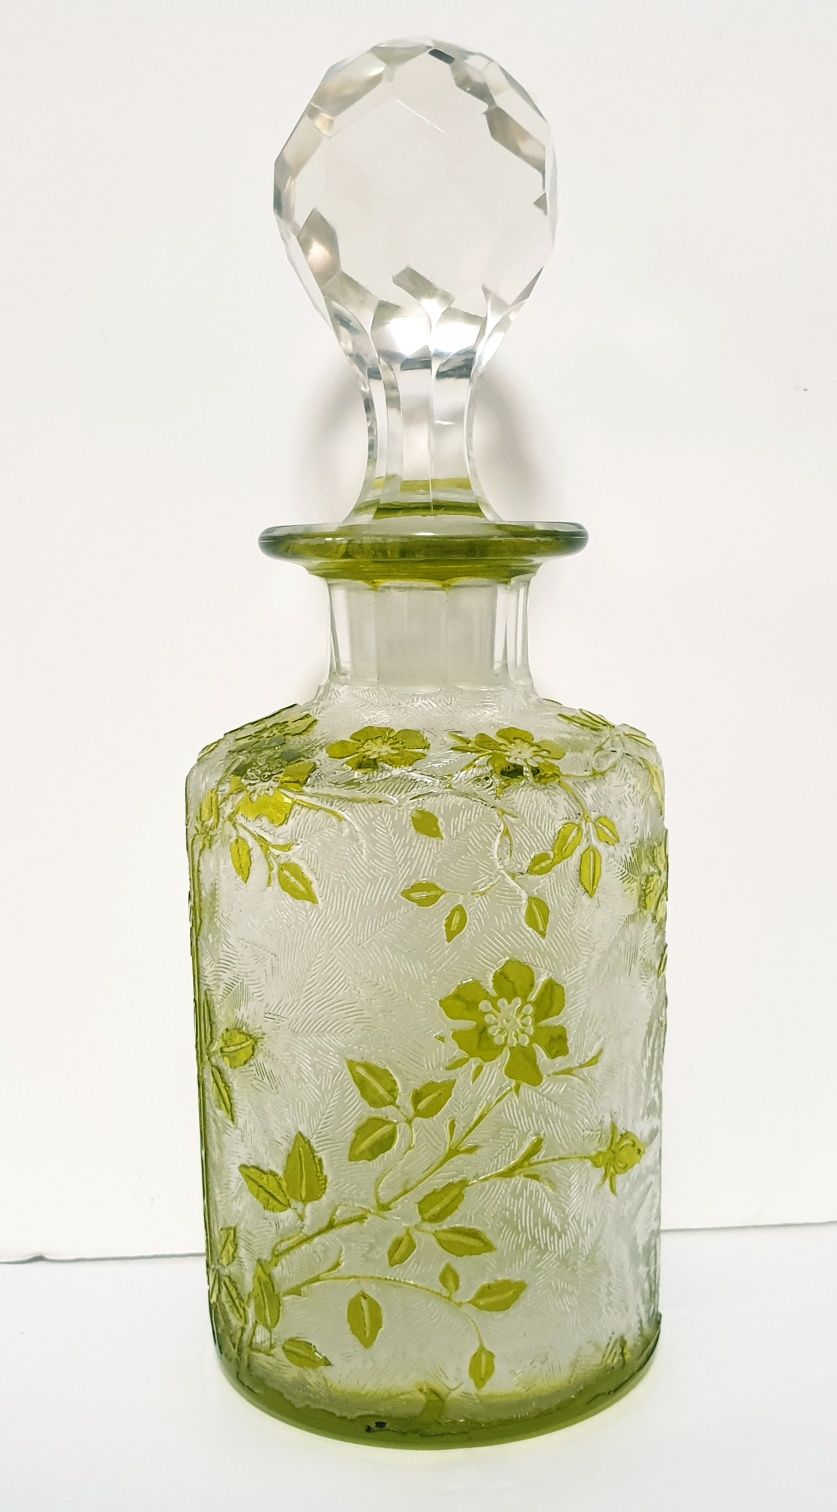 Maravilhoso antigo frasco de perfume Eglantier em cristal Baccarat